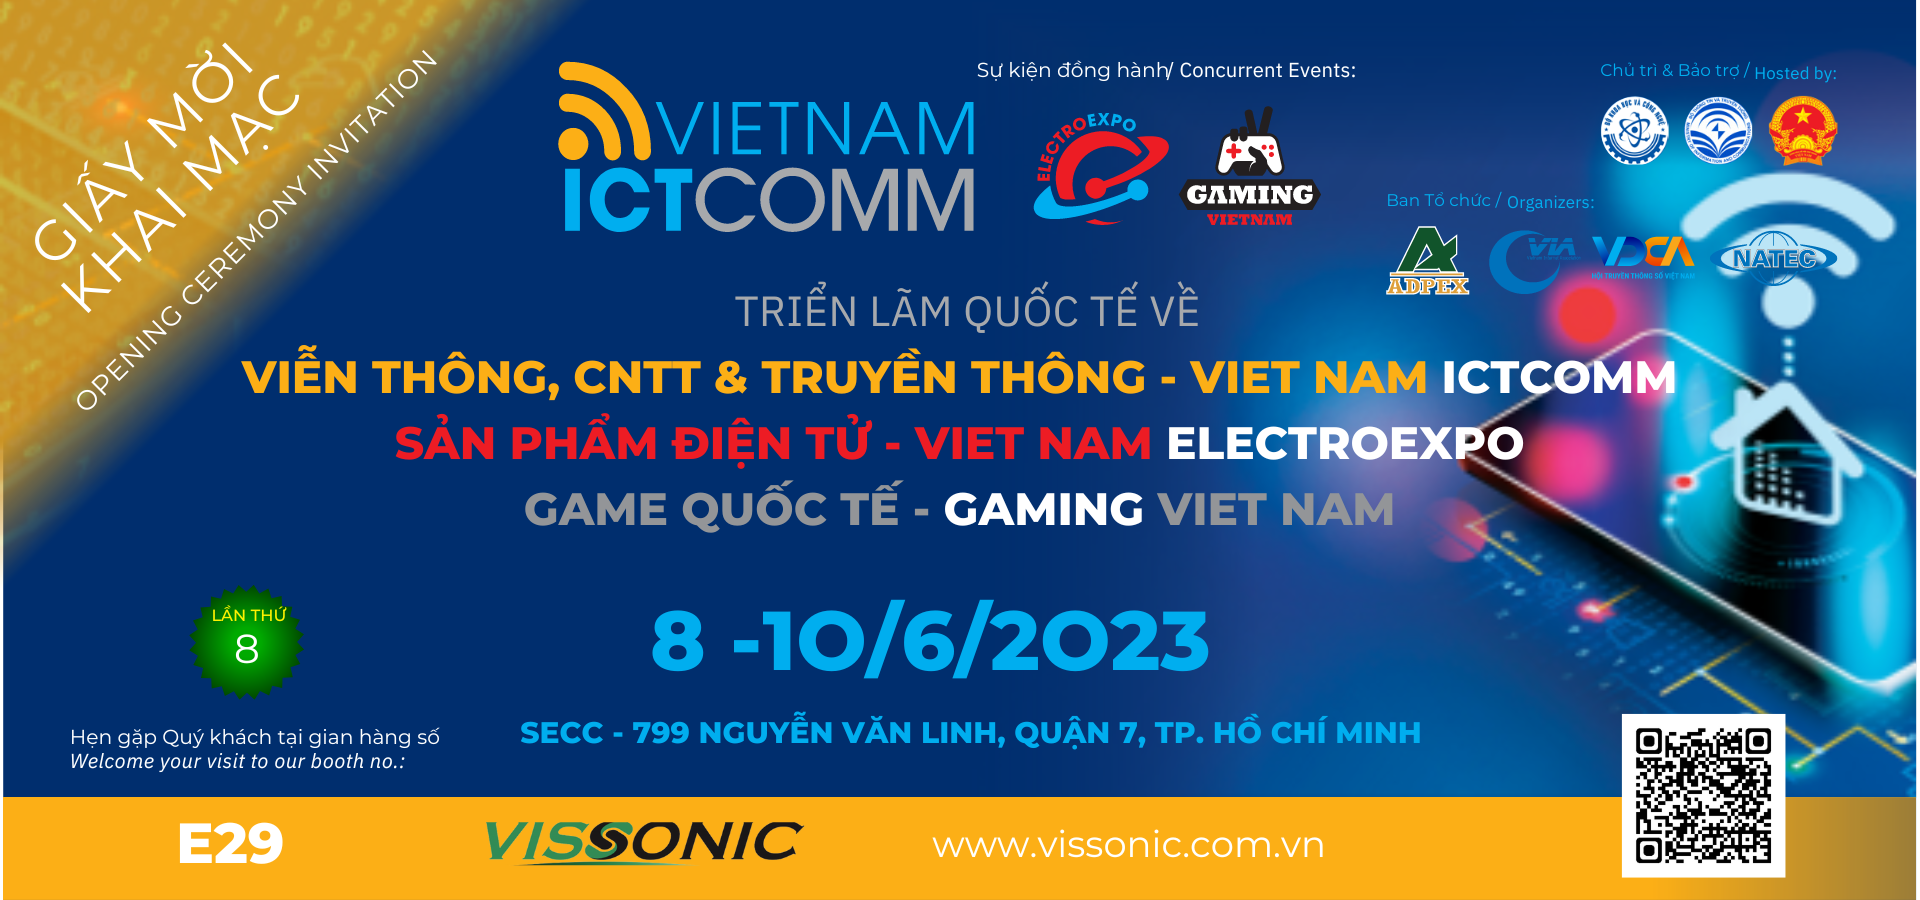 THƯ MỜI THAM DỰ TRIỂN LÃM VIETNAM ICT COMM 2023